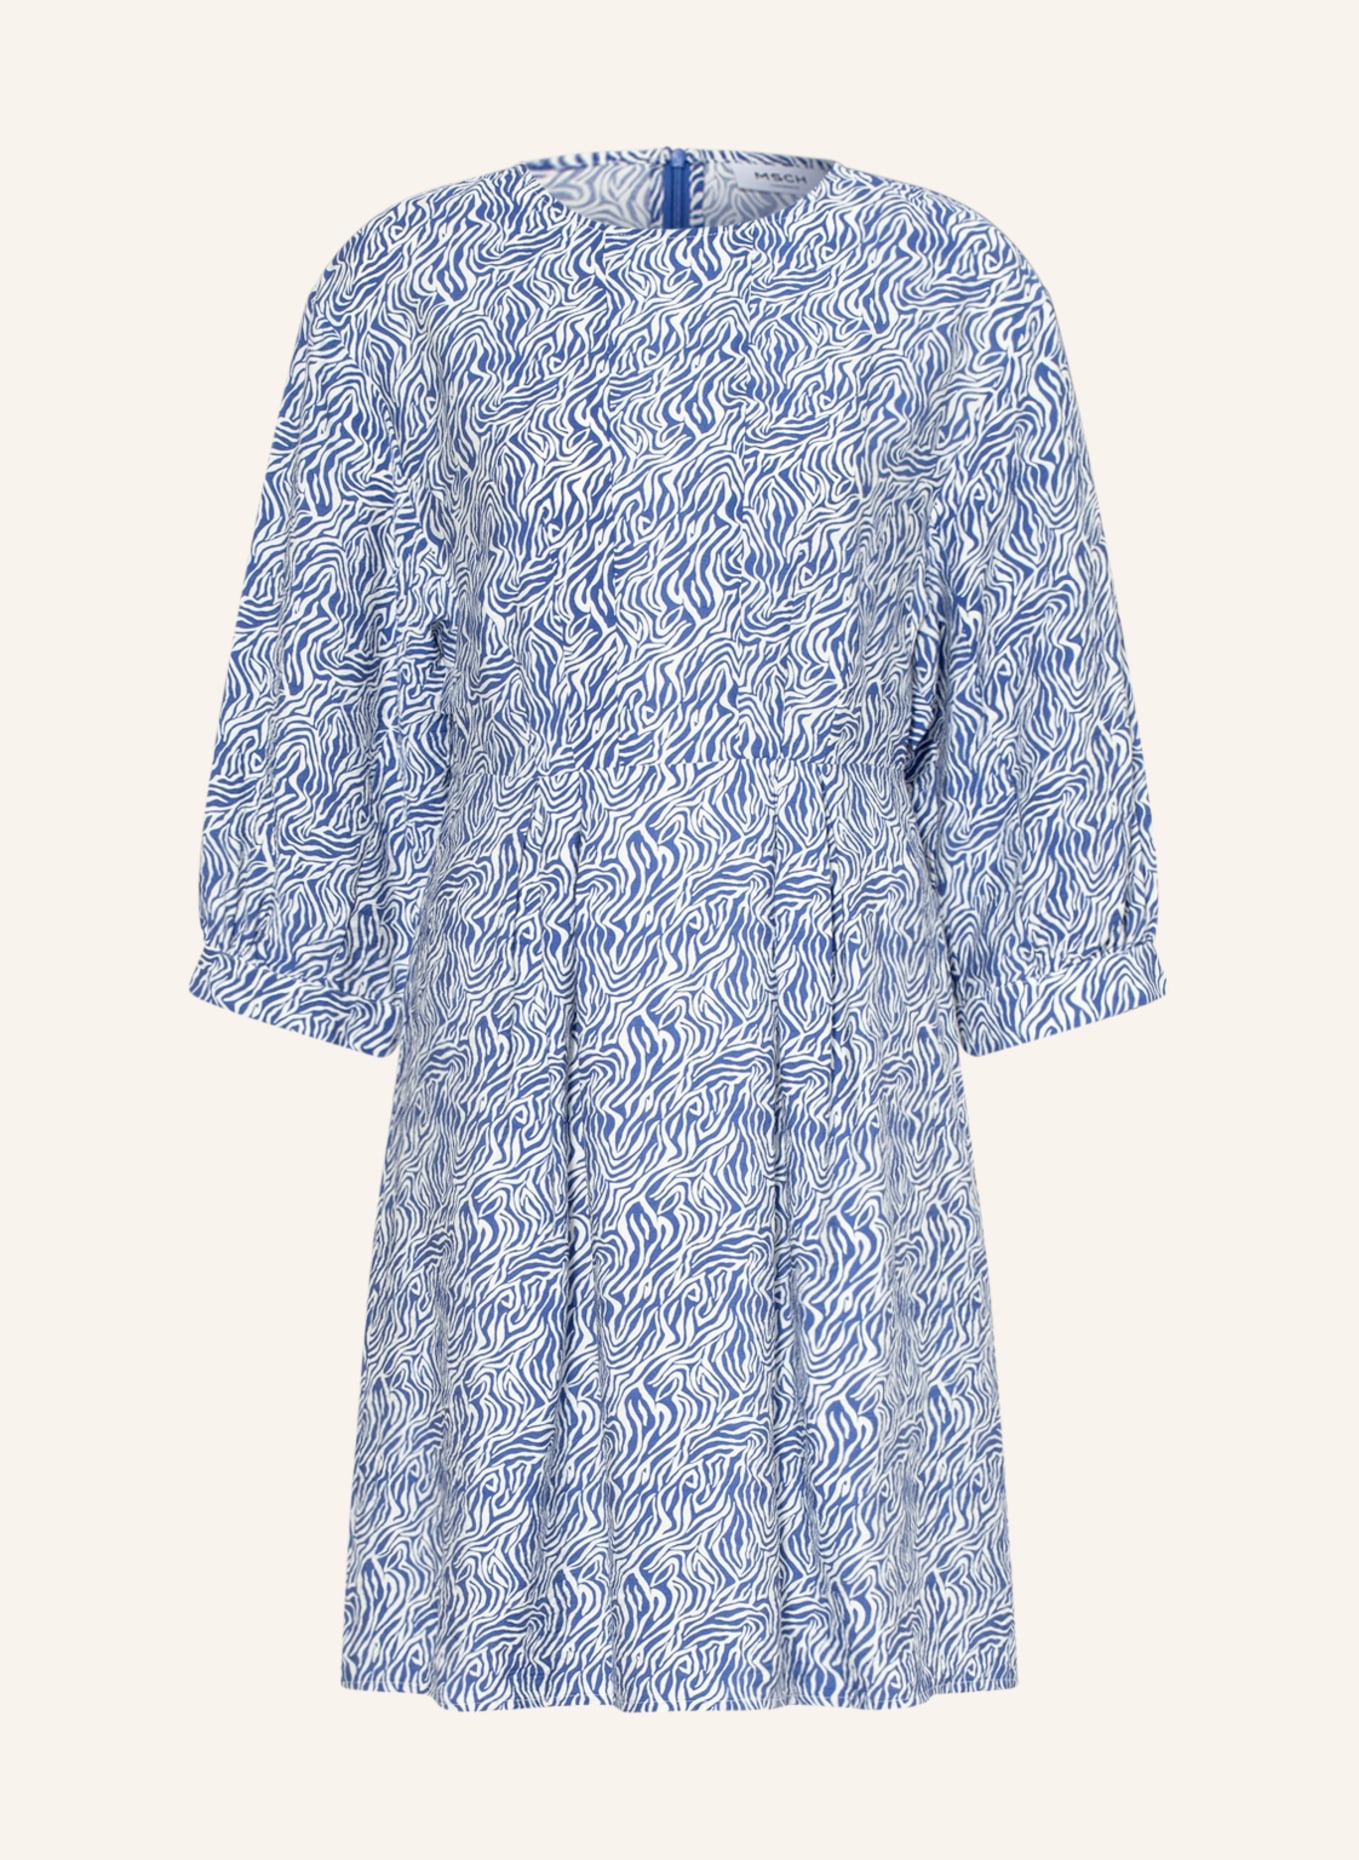 MSCH COPENHAGEN Kleid ADALINE LADONNA mit 3/4-Arm, Farbe: WEISS/ BLAU (Bild 1)